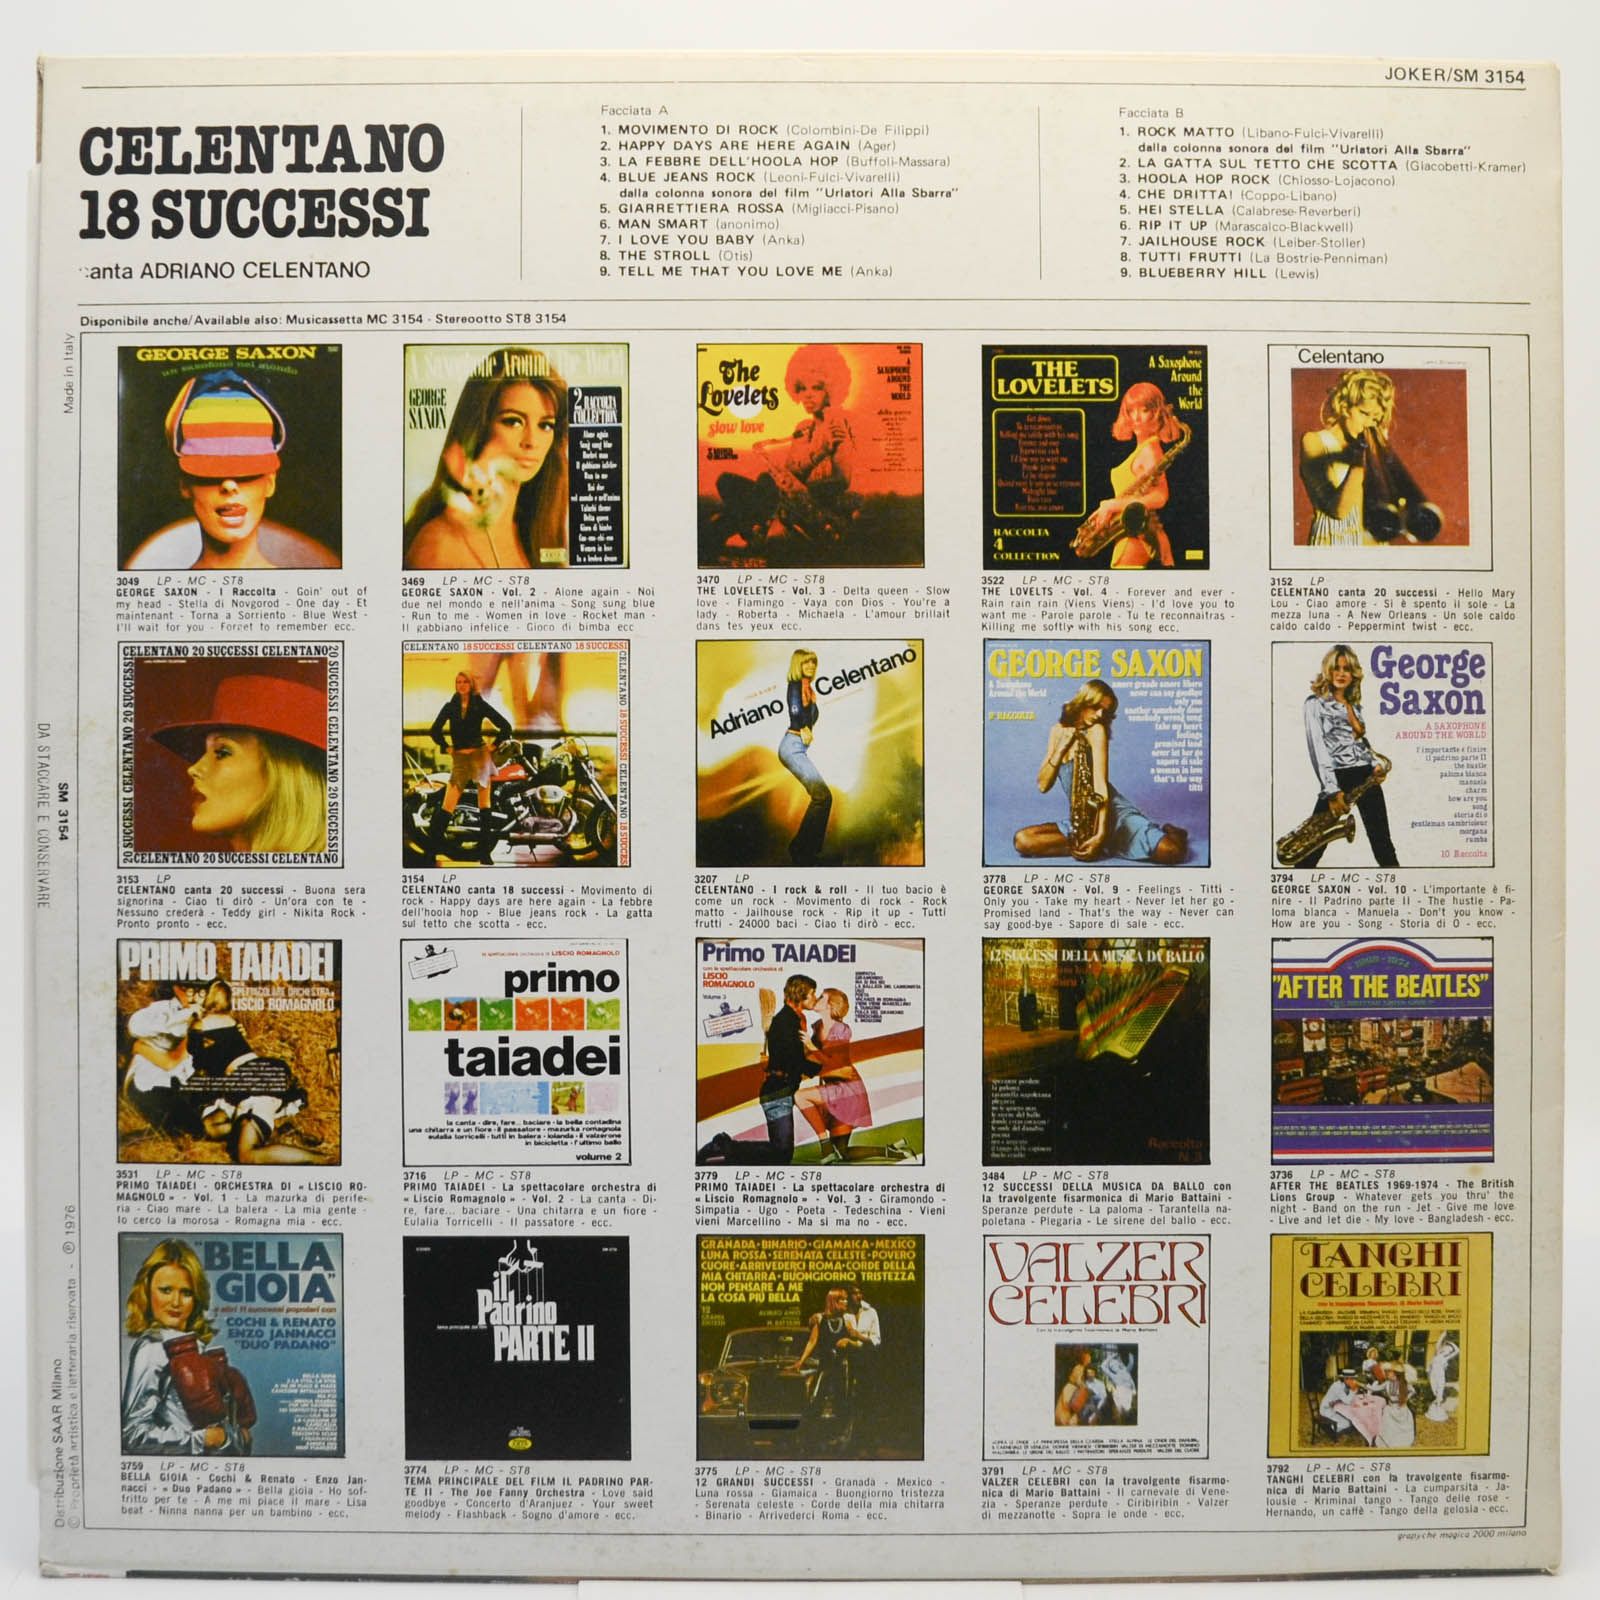 Adriano Celentano — 18 Successi (Italy), 1976